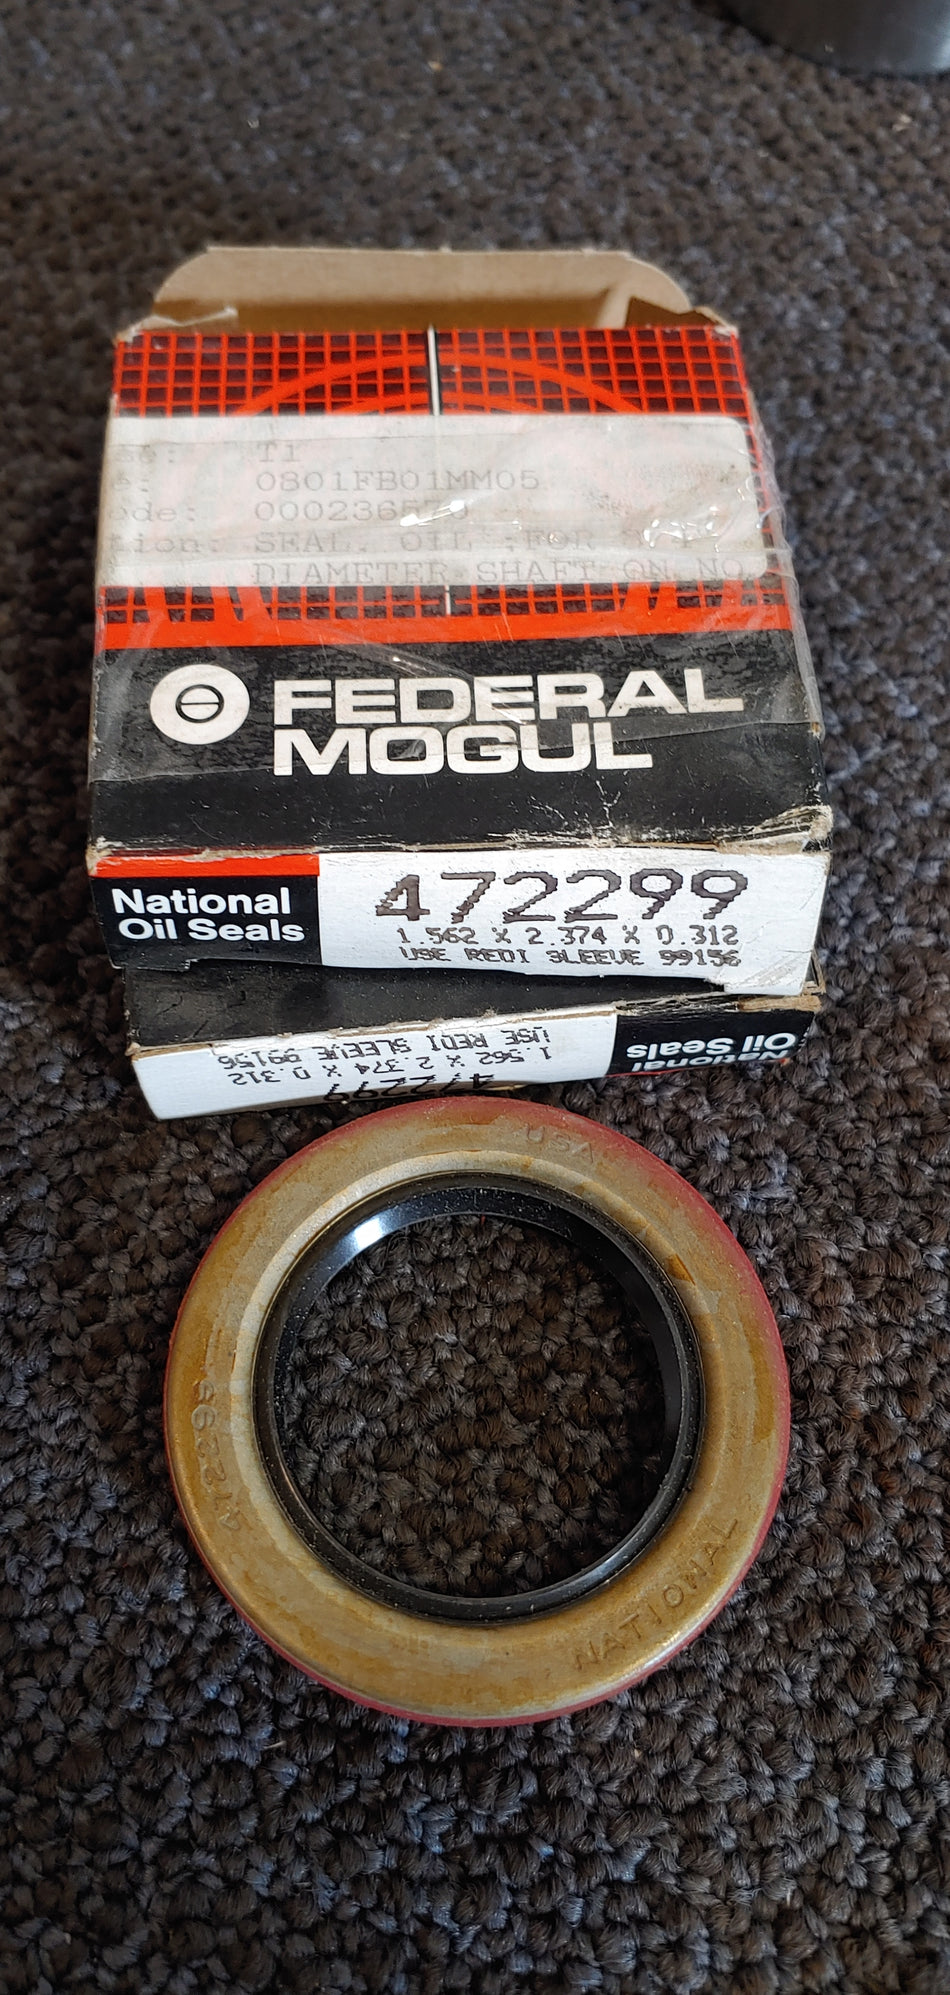 Lot of 2 Federal Mogul National 472299 seals